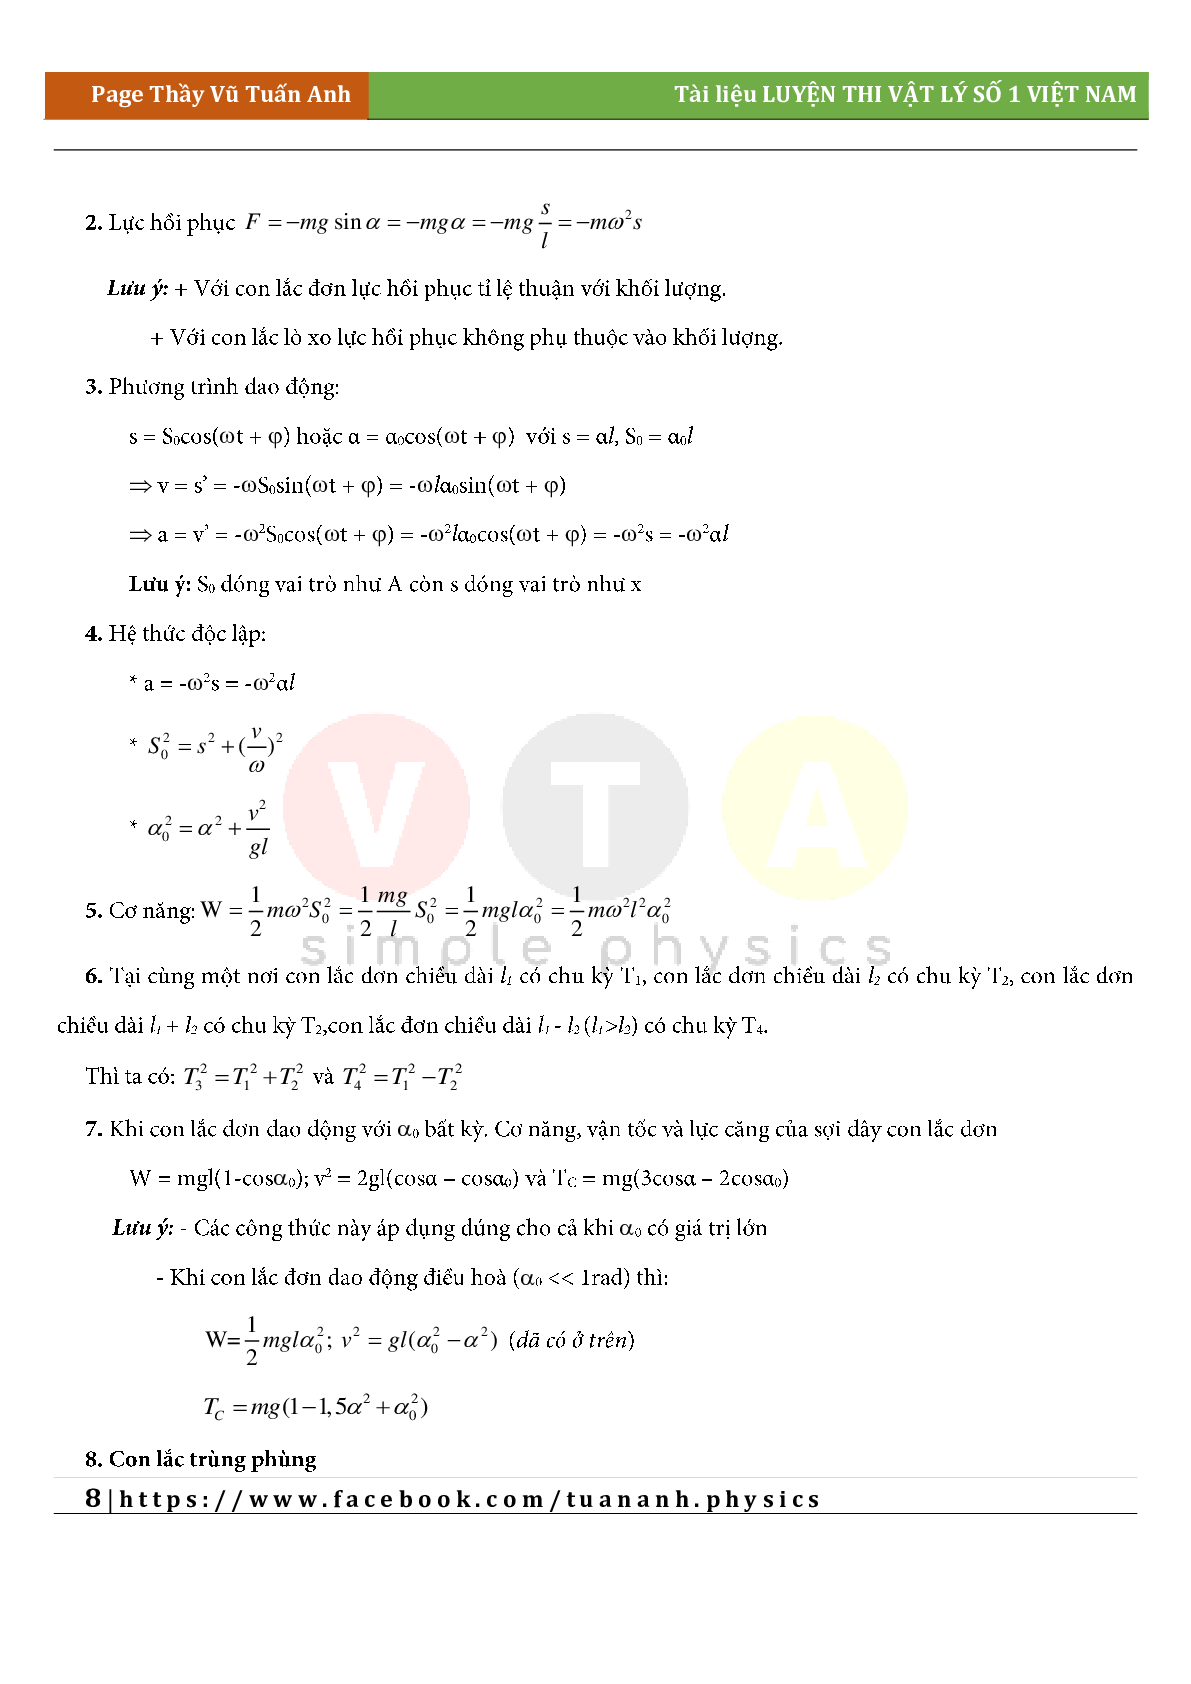 Công thức giải siêu nhanh môn Vật lý lớp 12 cả năm (trang 8)